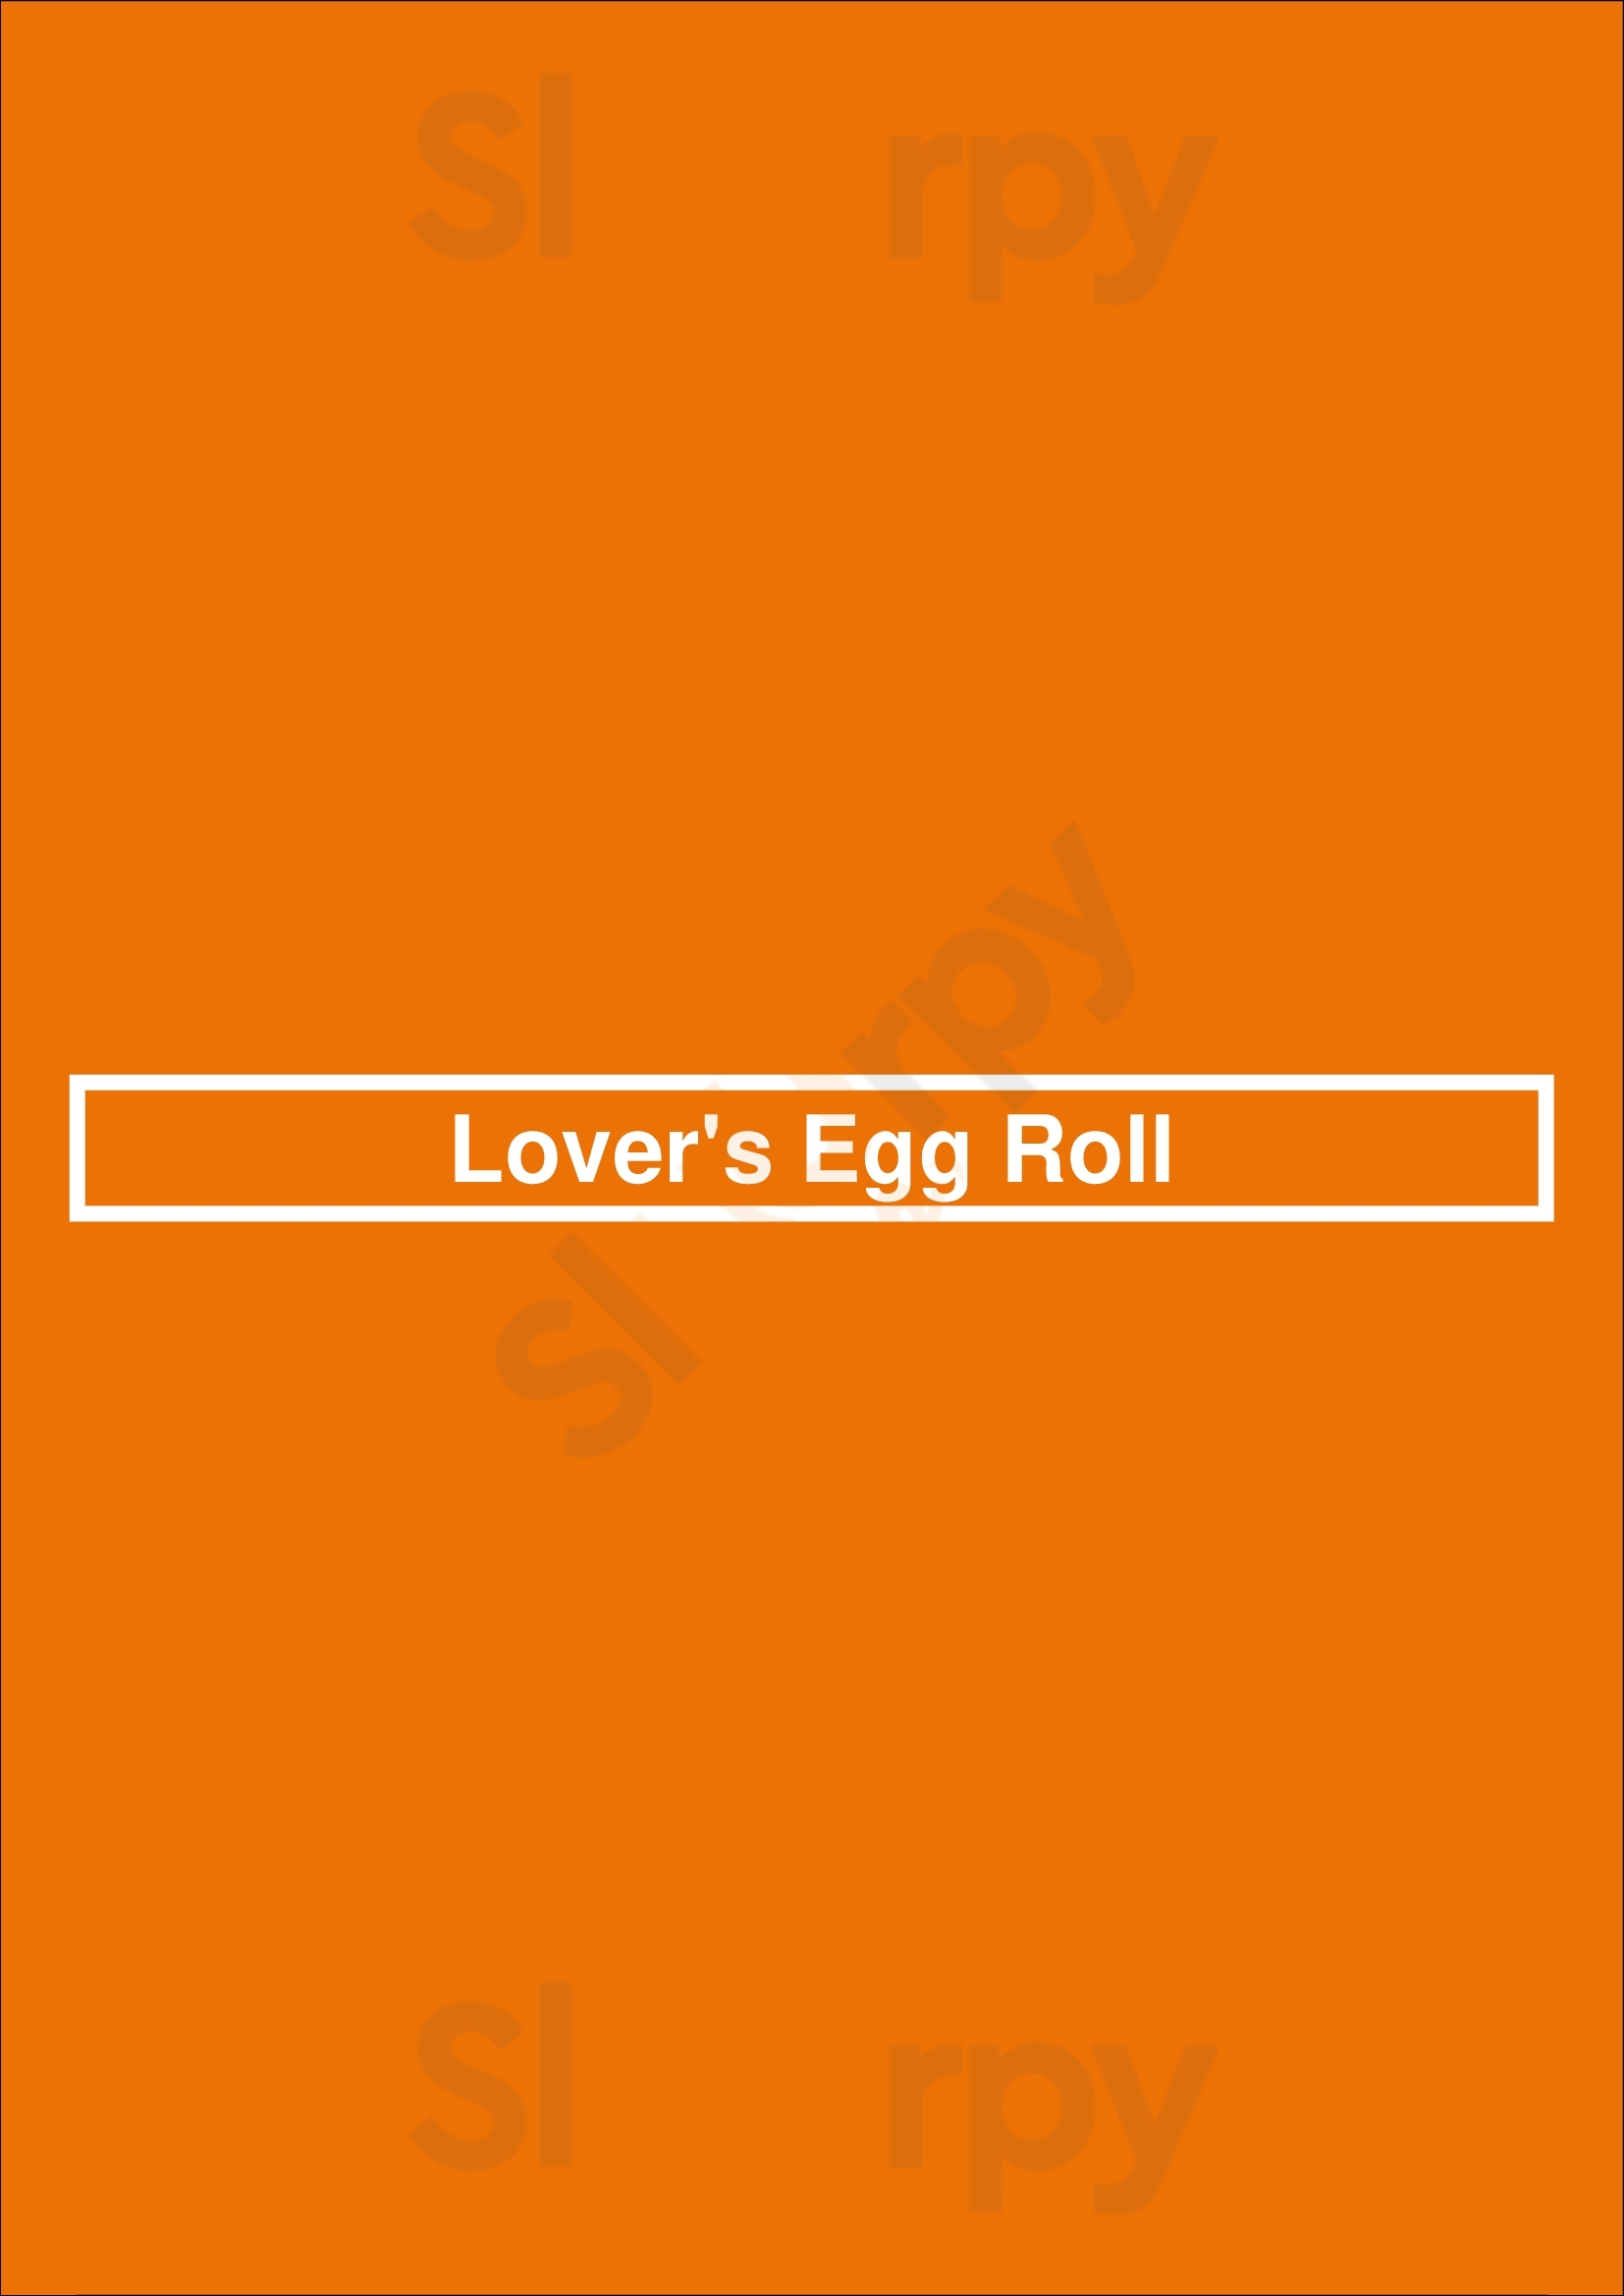 Lover's Egg Roll Dallas Menu - 1